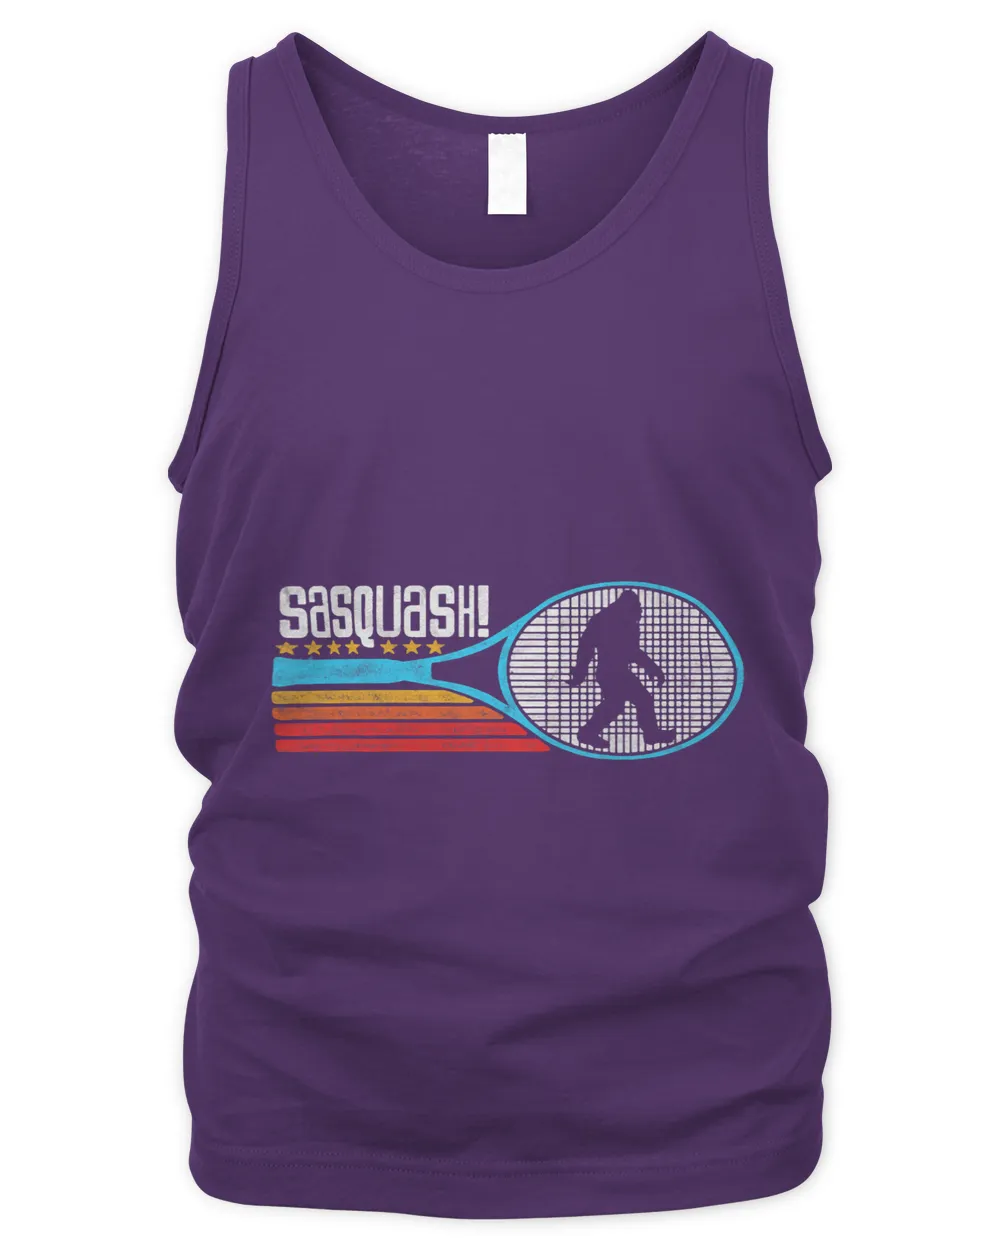 Sasquash Funny Bigfoot Squash Player 80s Retro